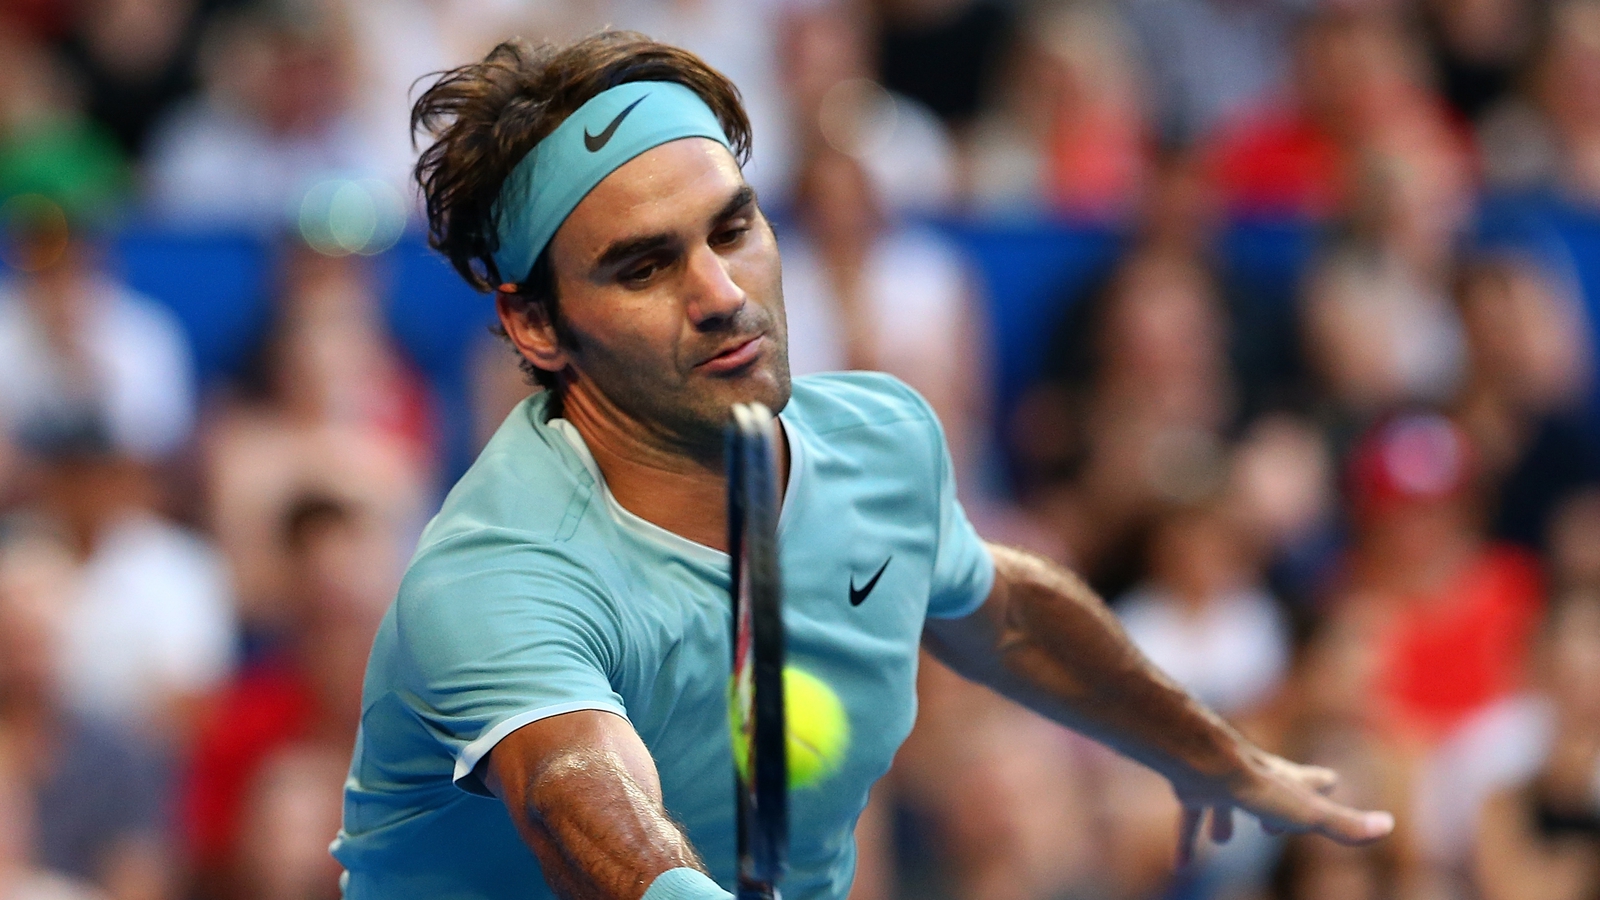 Federer successful in comeback match